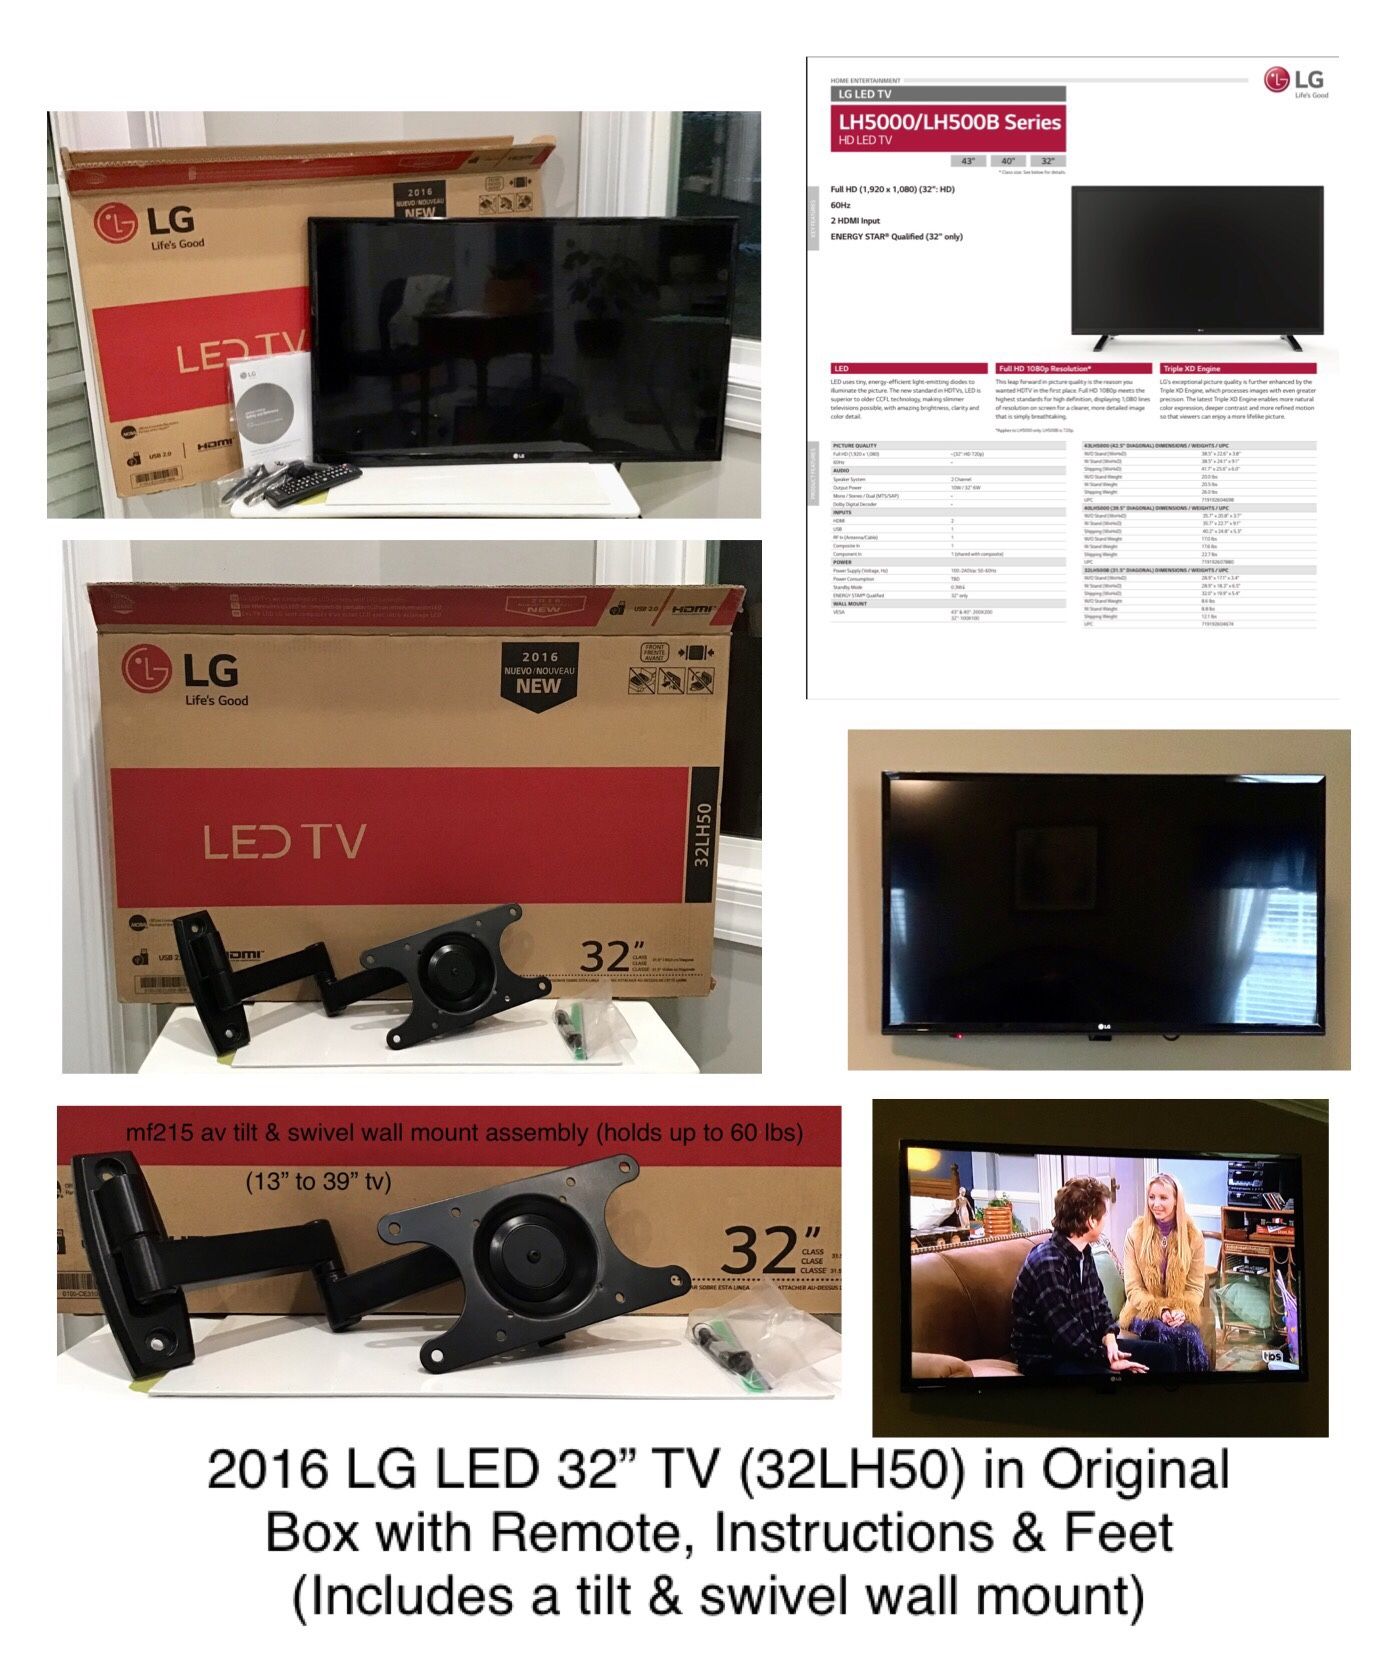 2016 LG LED 32” TV (32LH50) in Original Box & Tilt & Swivel Wall Mount